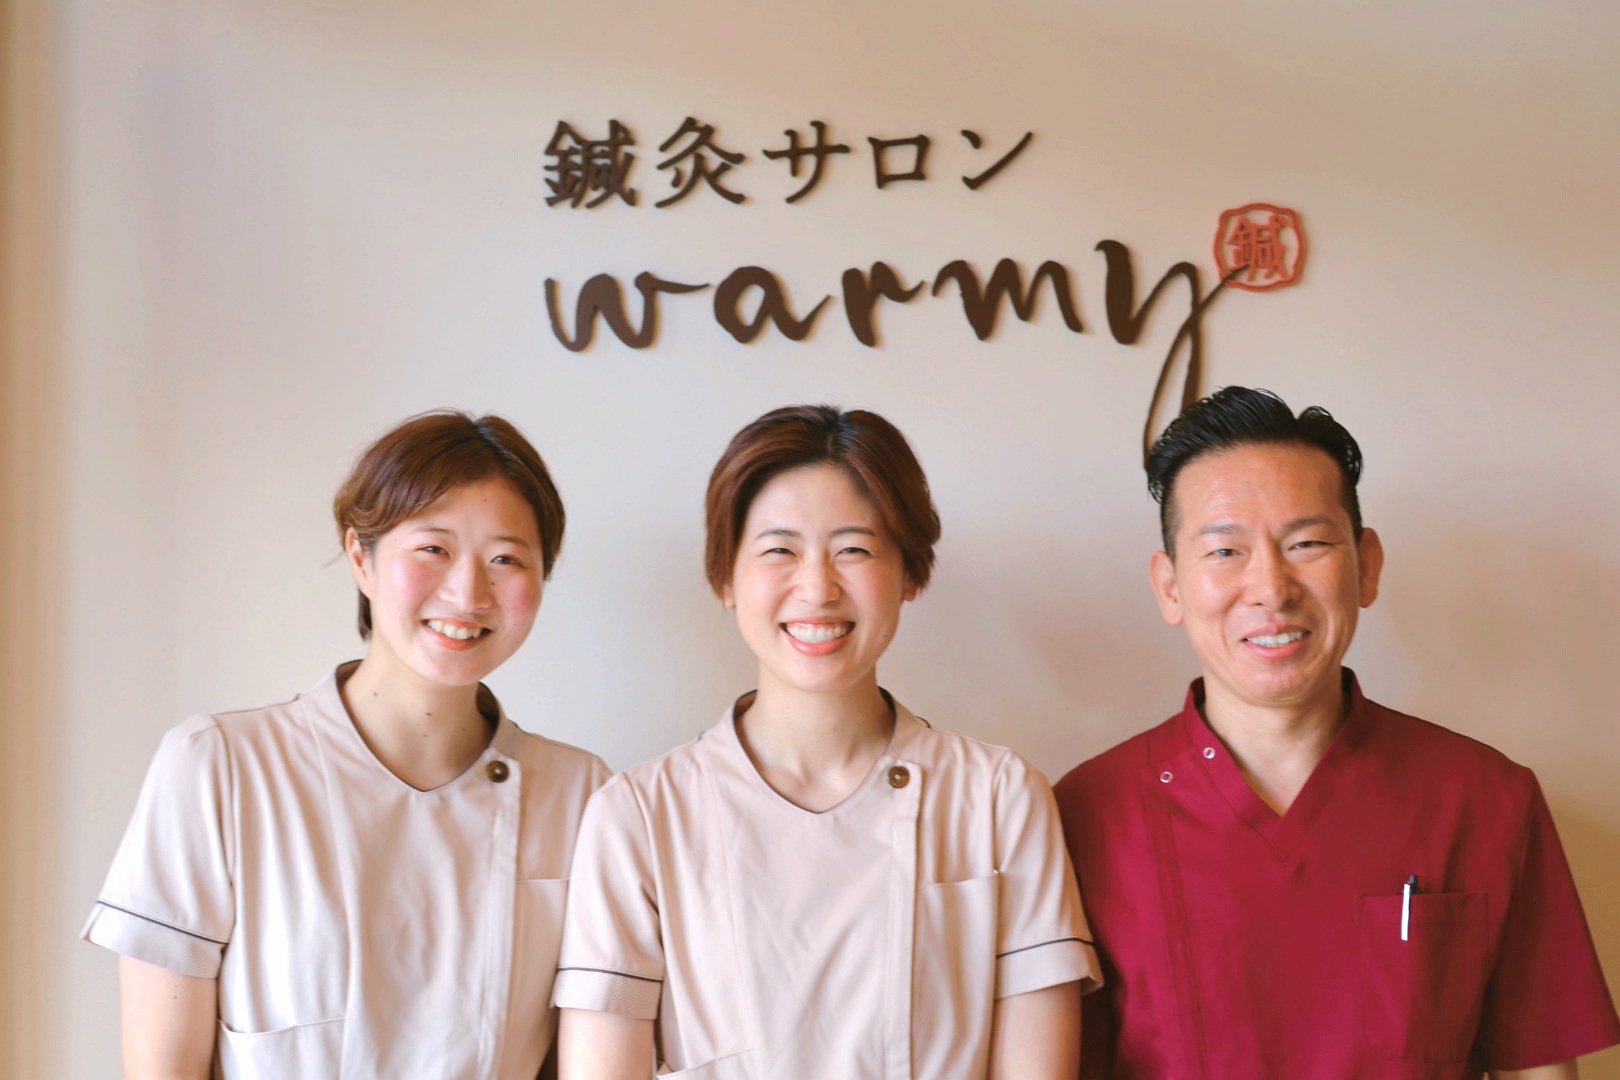 鍼灸サロンwarmy（静岡県浜松市）